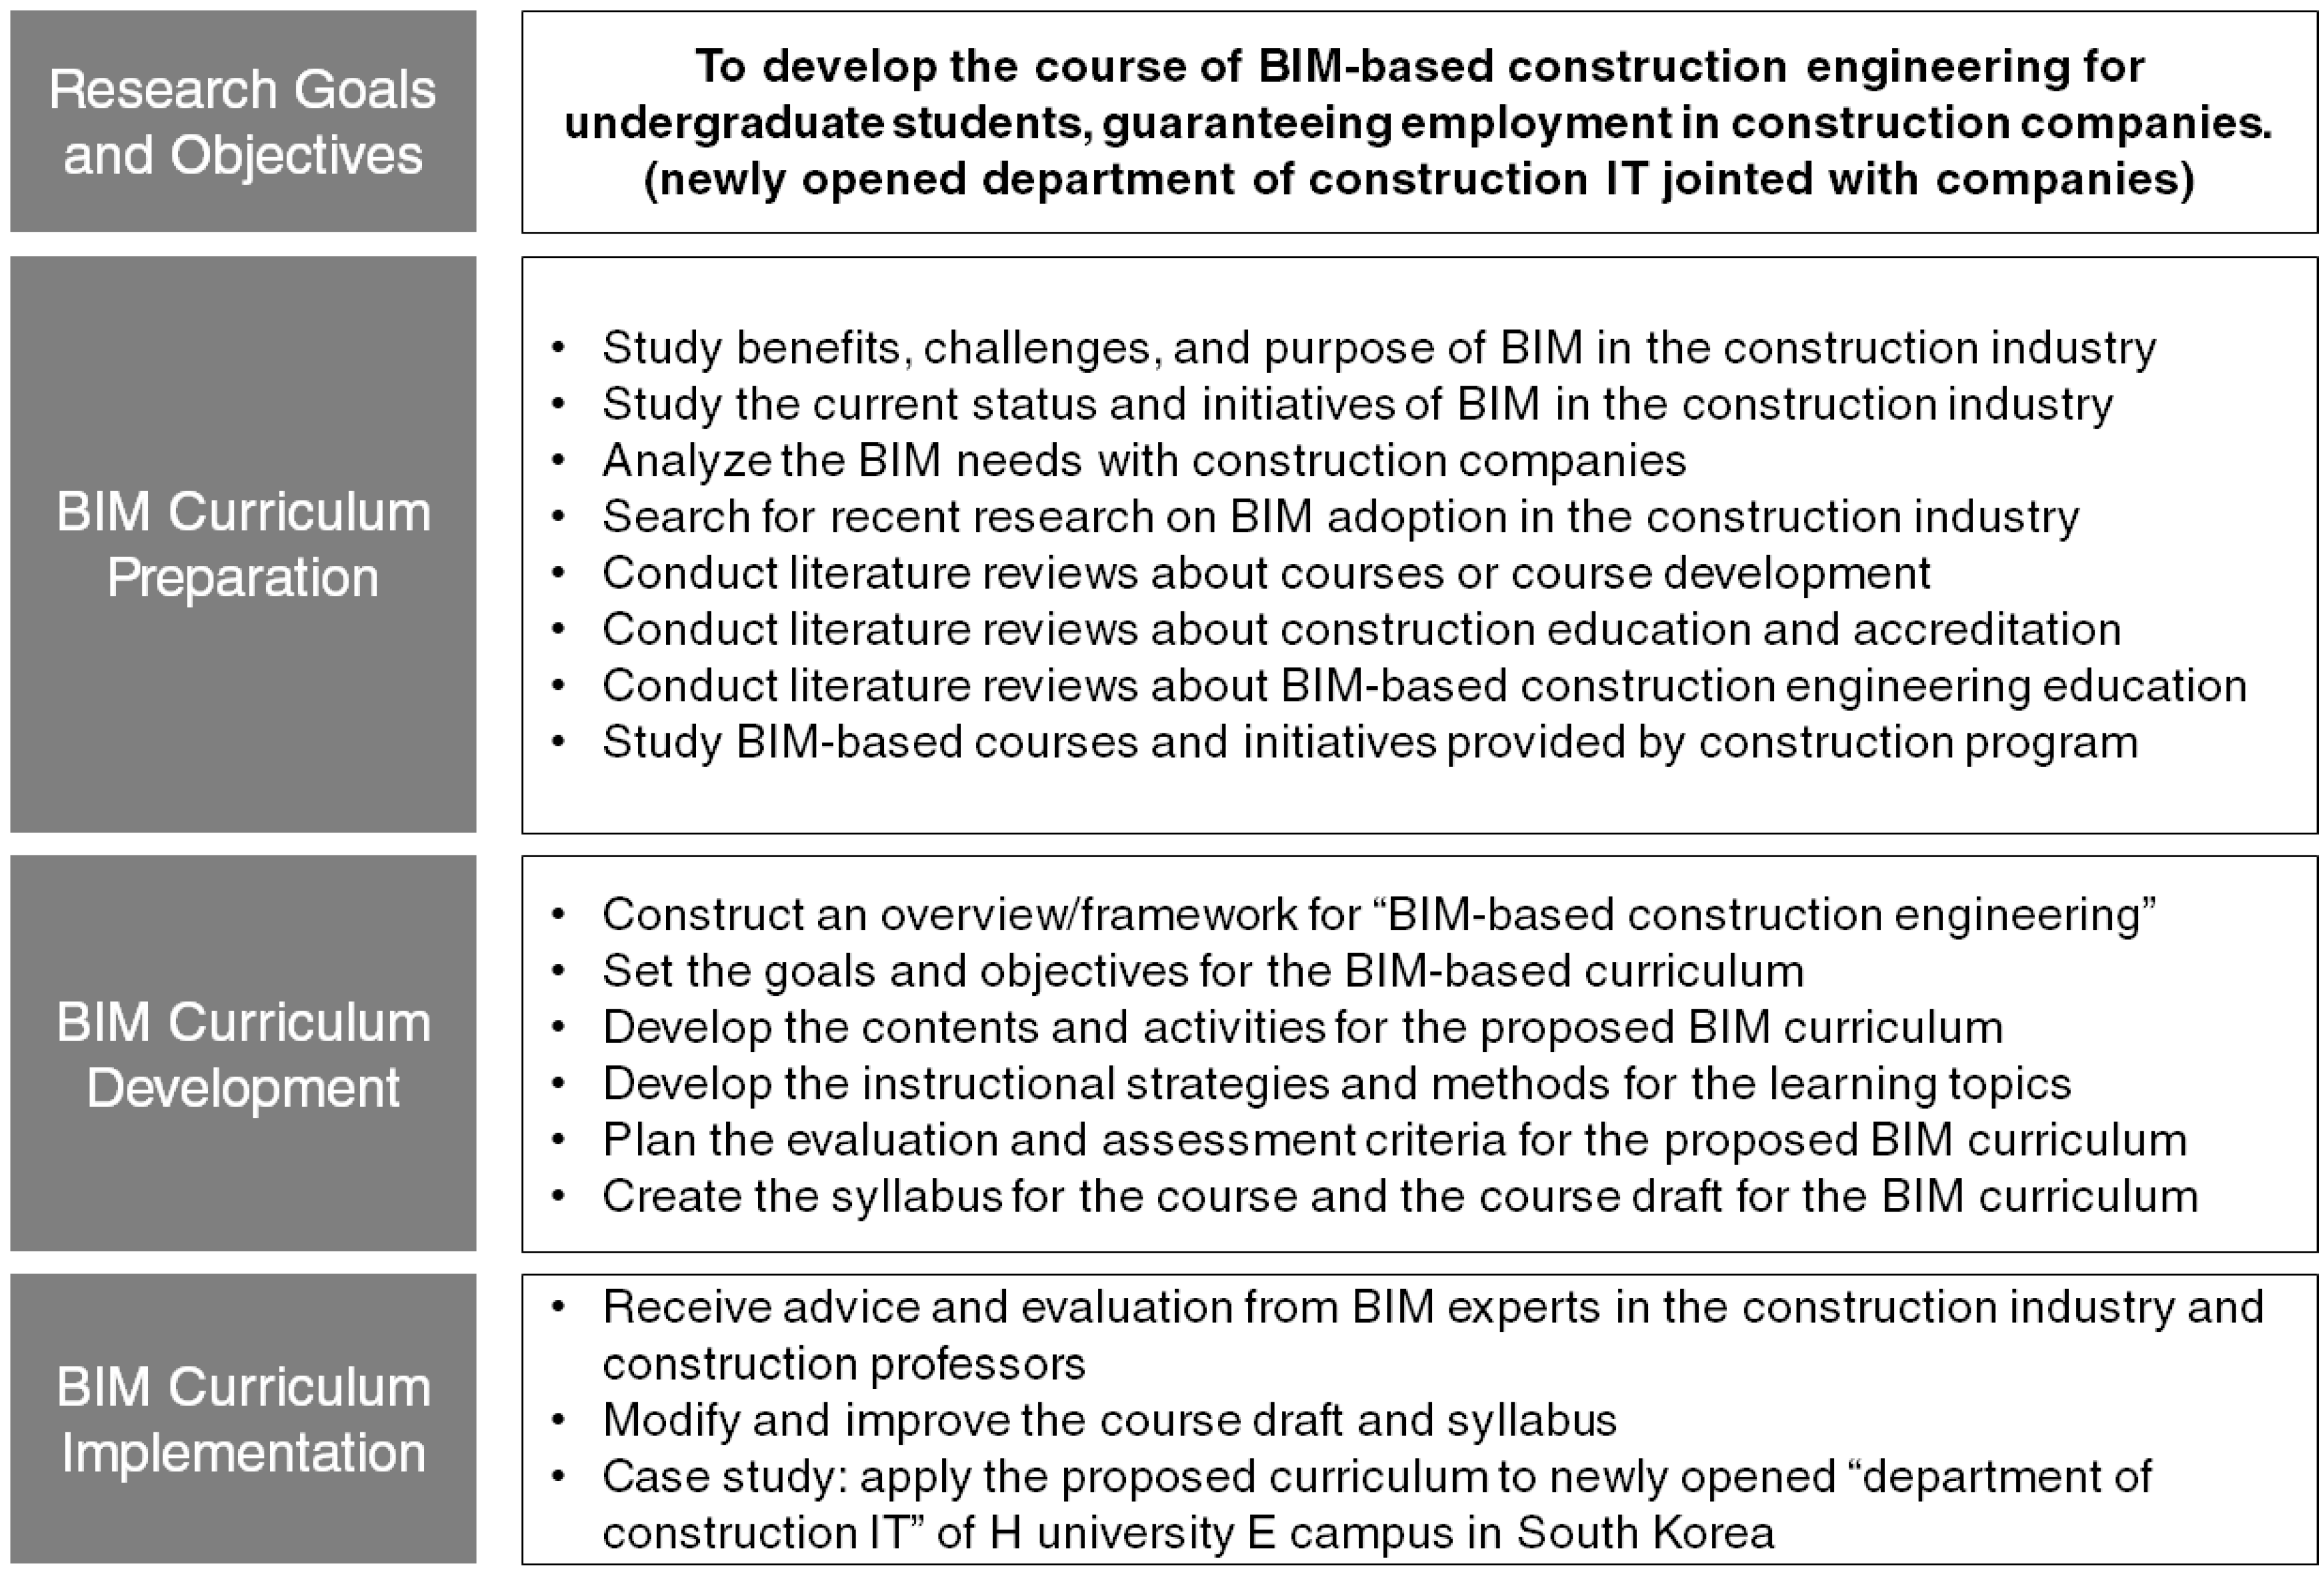 cover letter for bim engineer